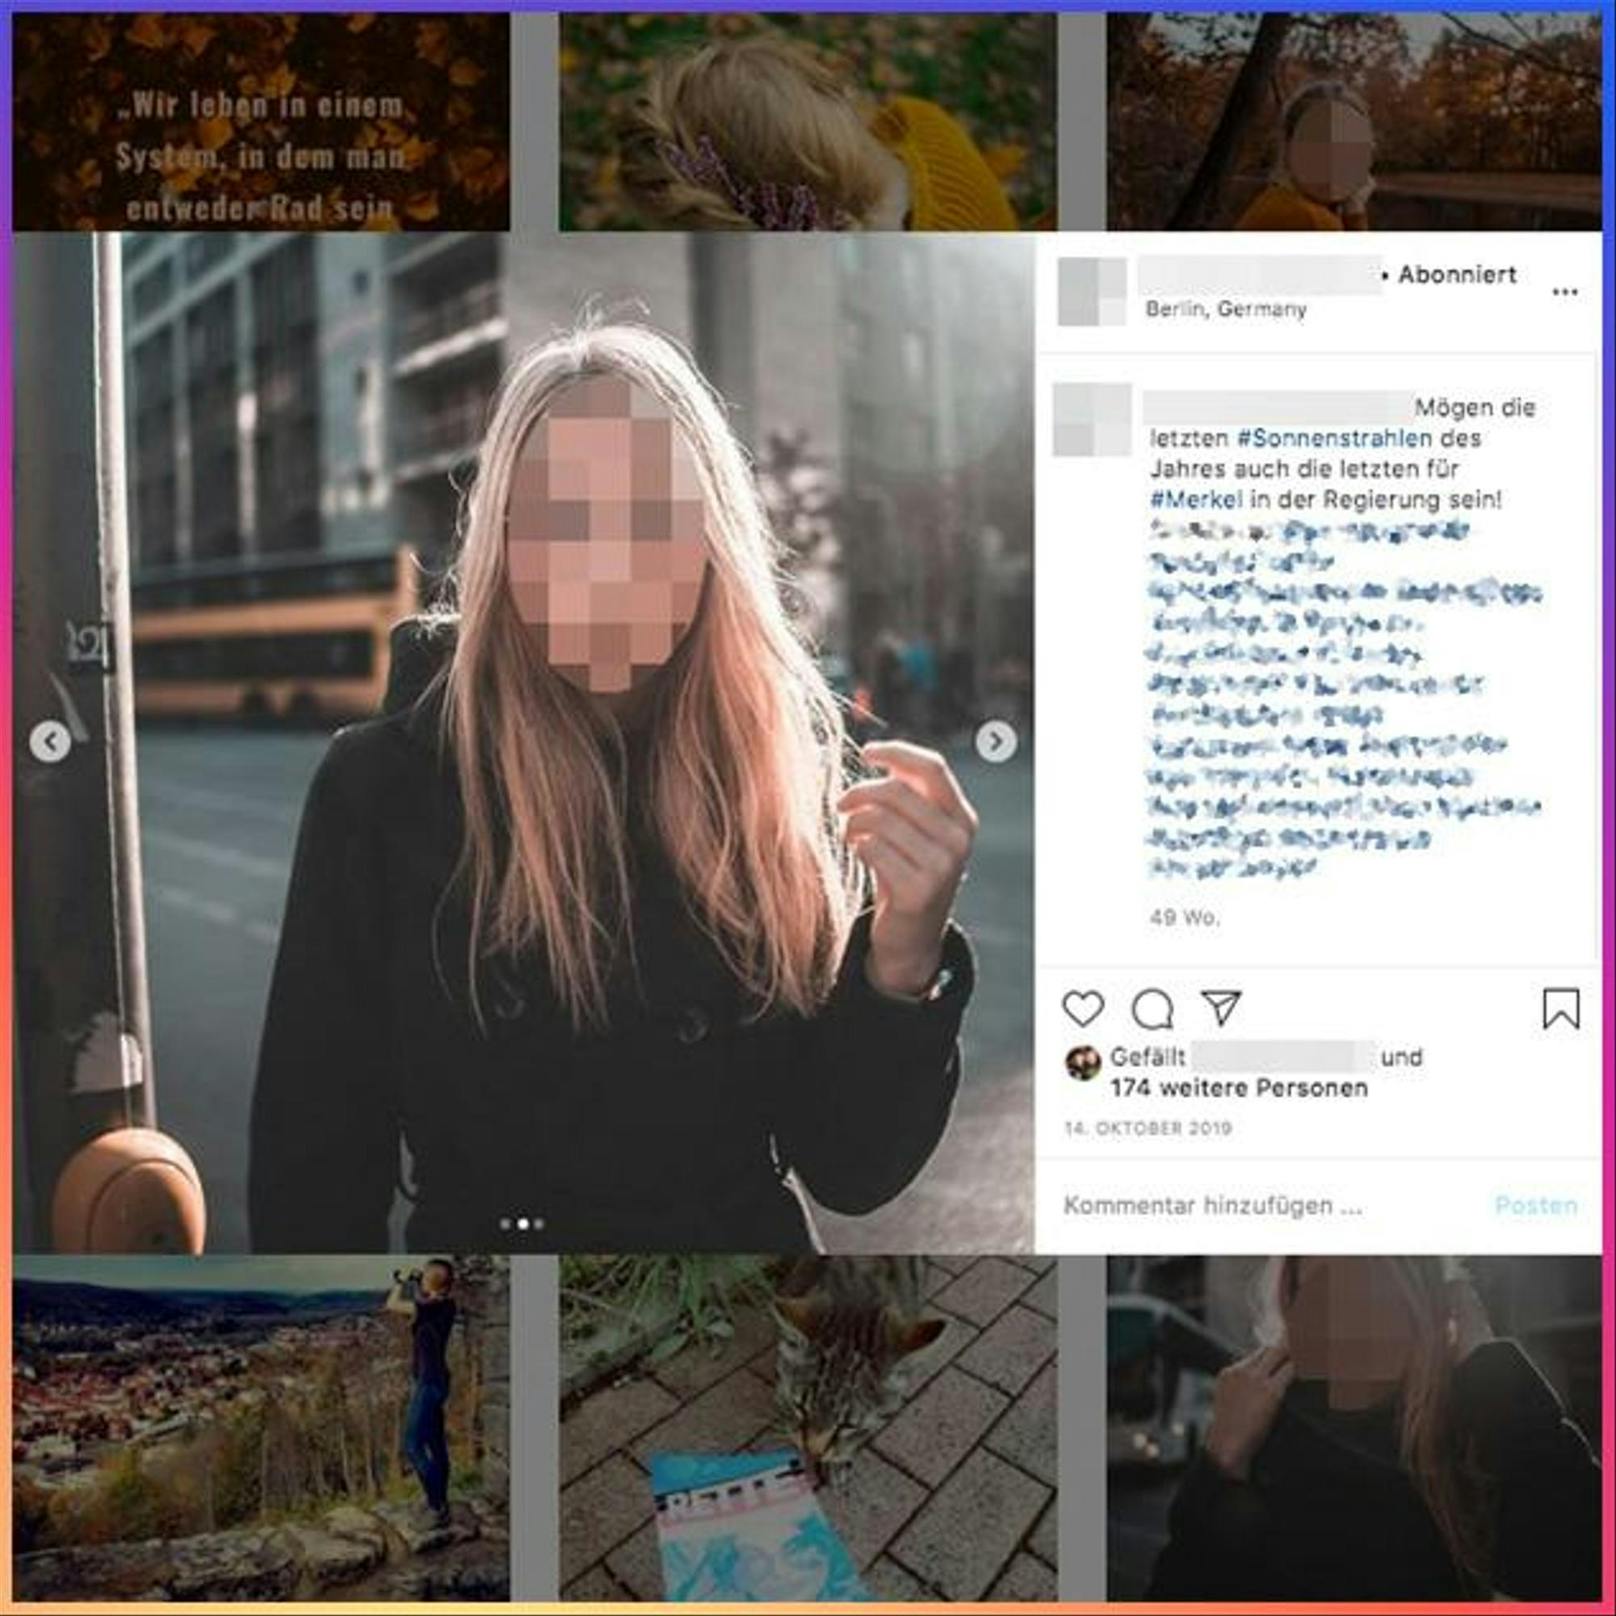 Instagram schafft es oft nicht, Bilder mit rechtsextremen Symboliken oder Texten zu löschen.